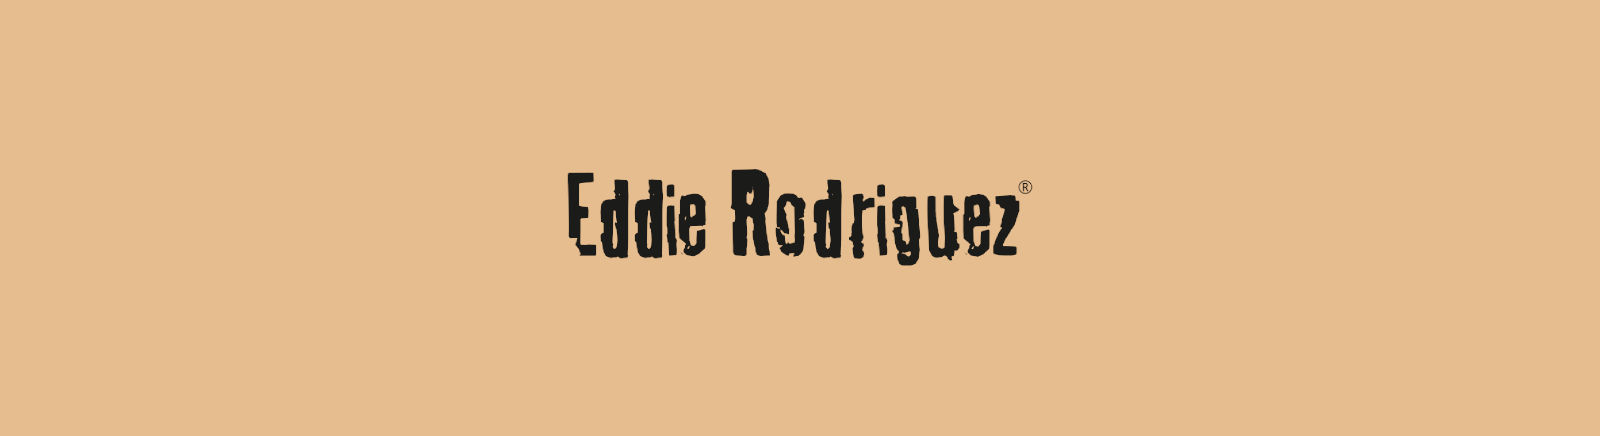 Prange: Eddie Rodriguez Klassische Pumps für Damen online shoppen